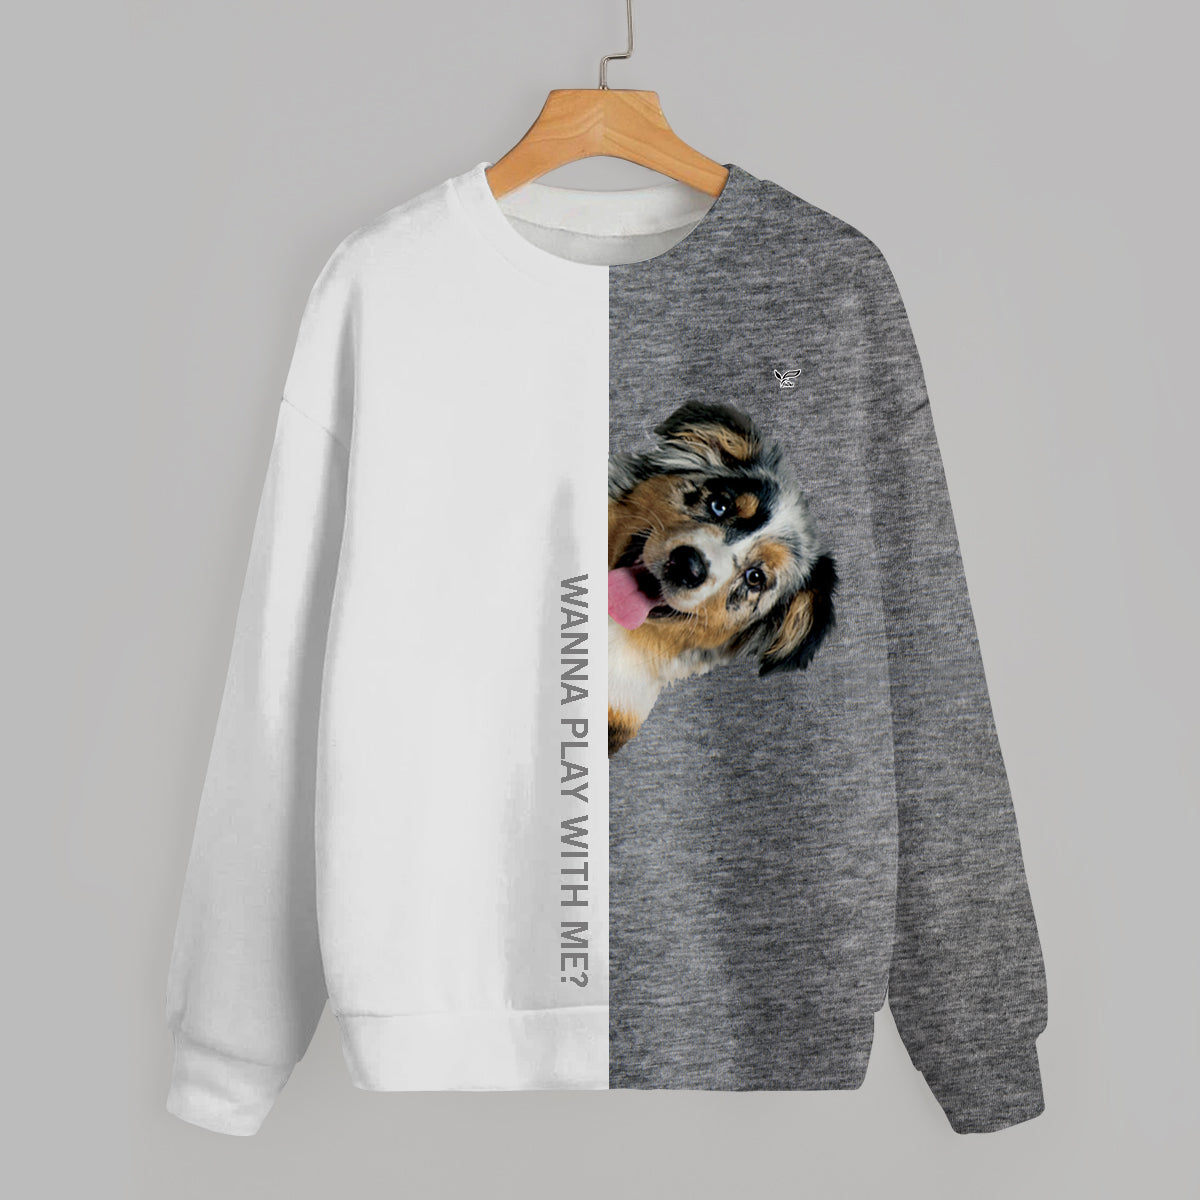 Funny Happy Time - Australian Shepherd Sweatshirt V1